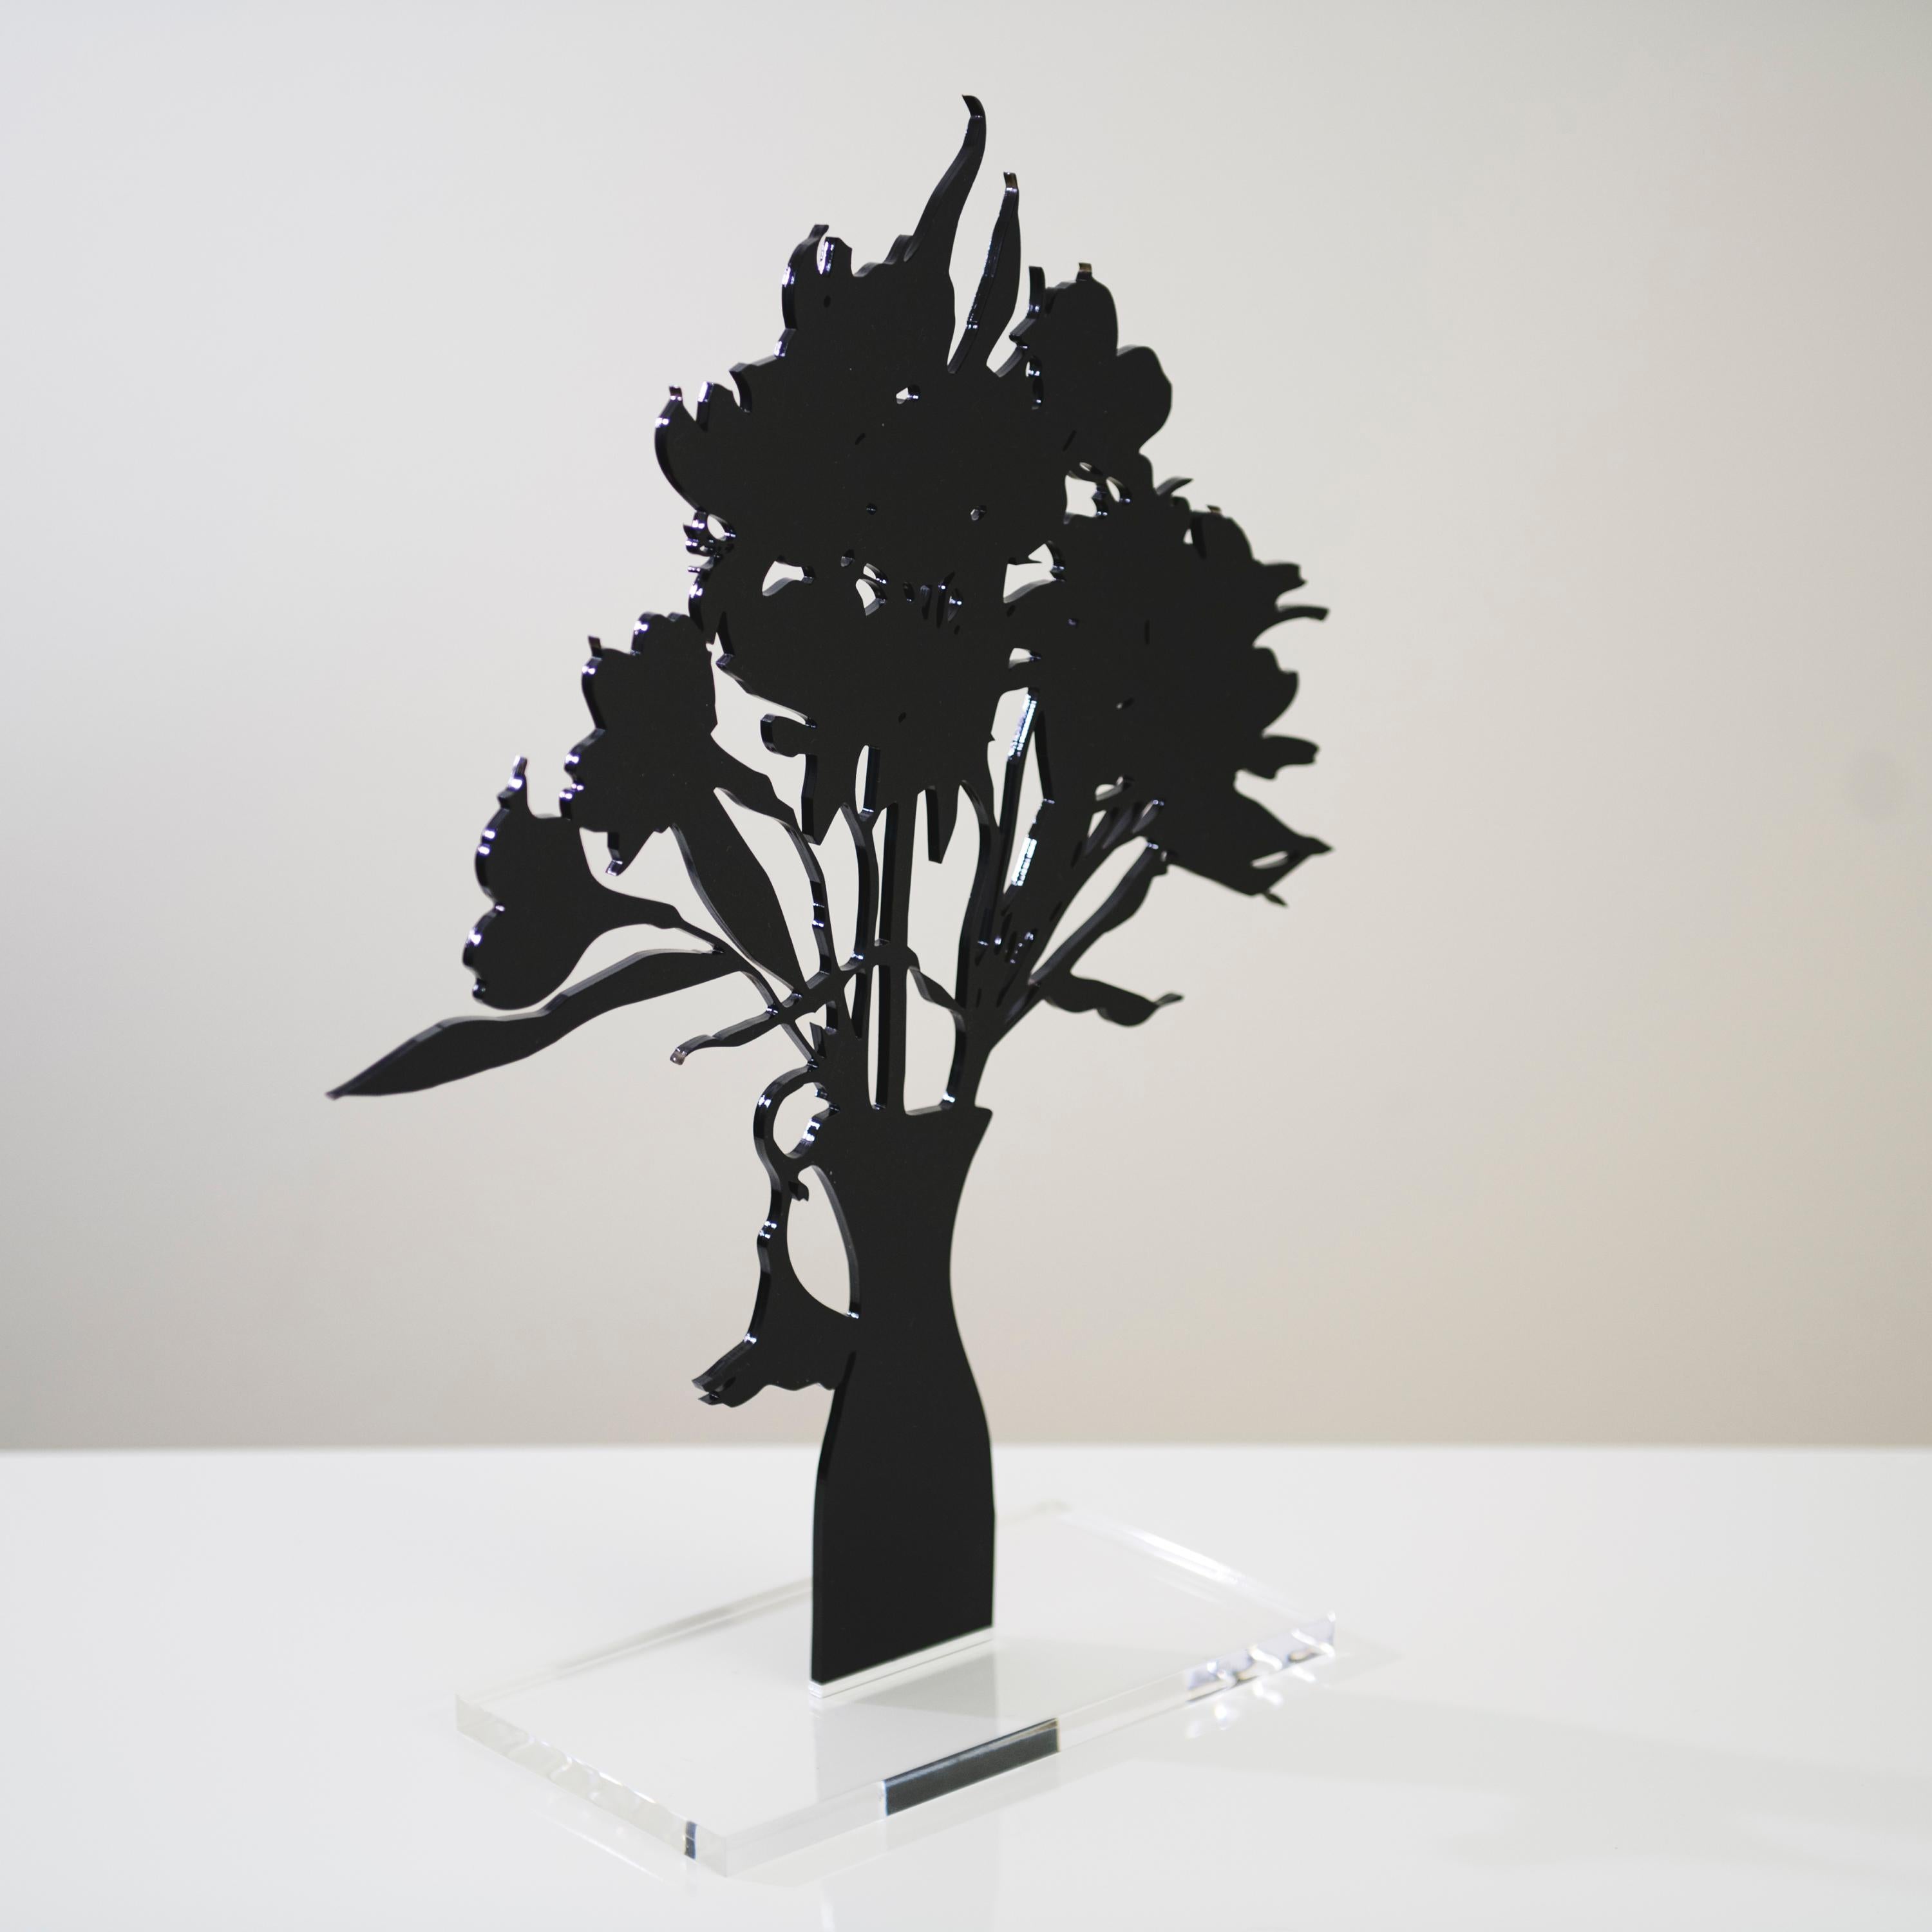 Alstroemerias - Floral black shadow flower bouquet sculpture - Sculpture by Joana P. Cardozo